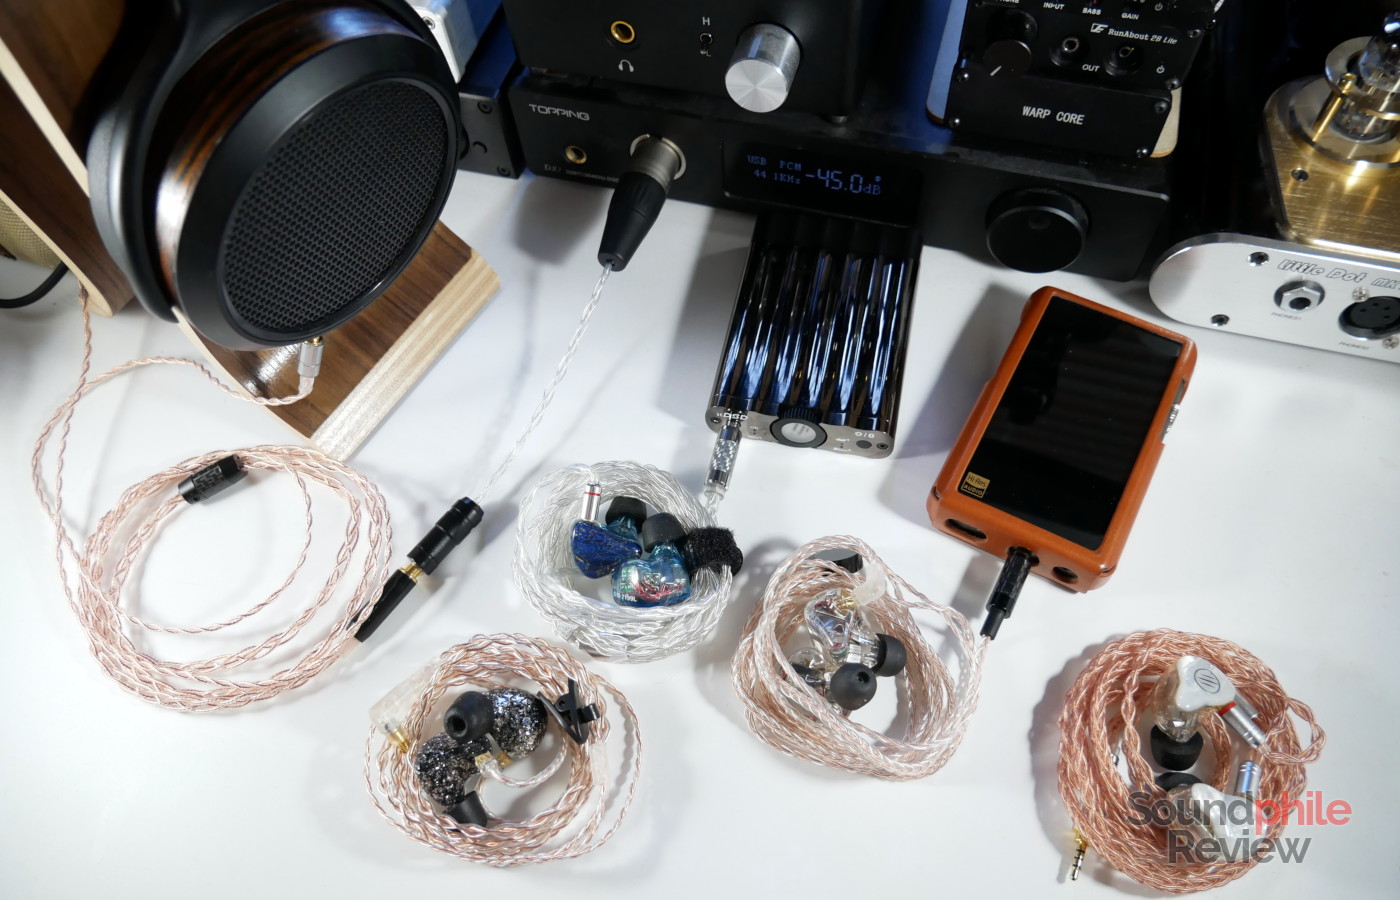 Soundphile headphones, DACs, amplifiers and DAPs - Soundphile Review